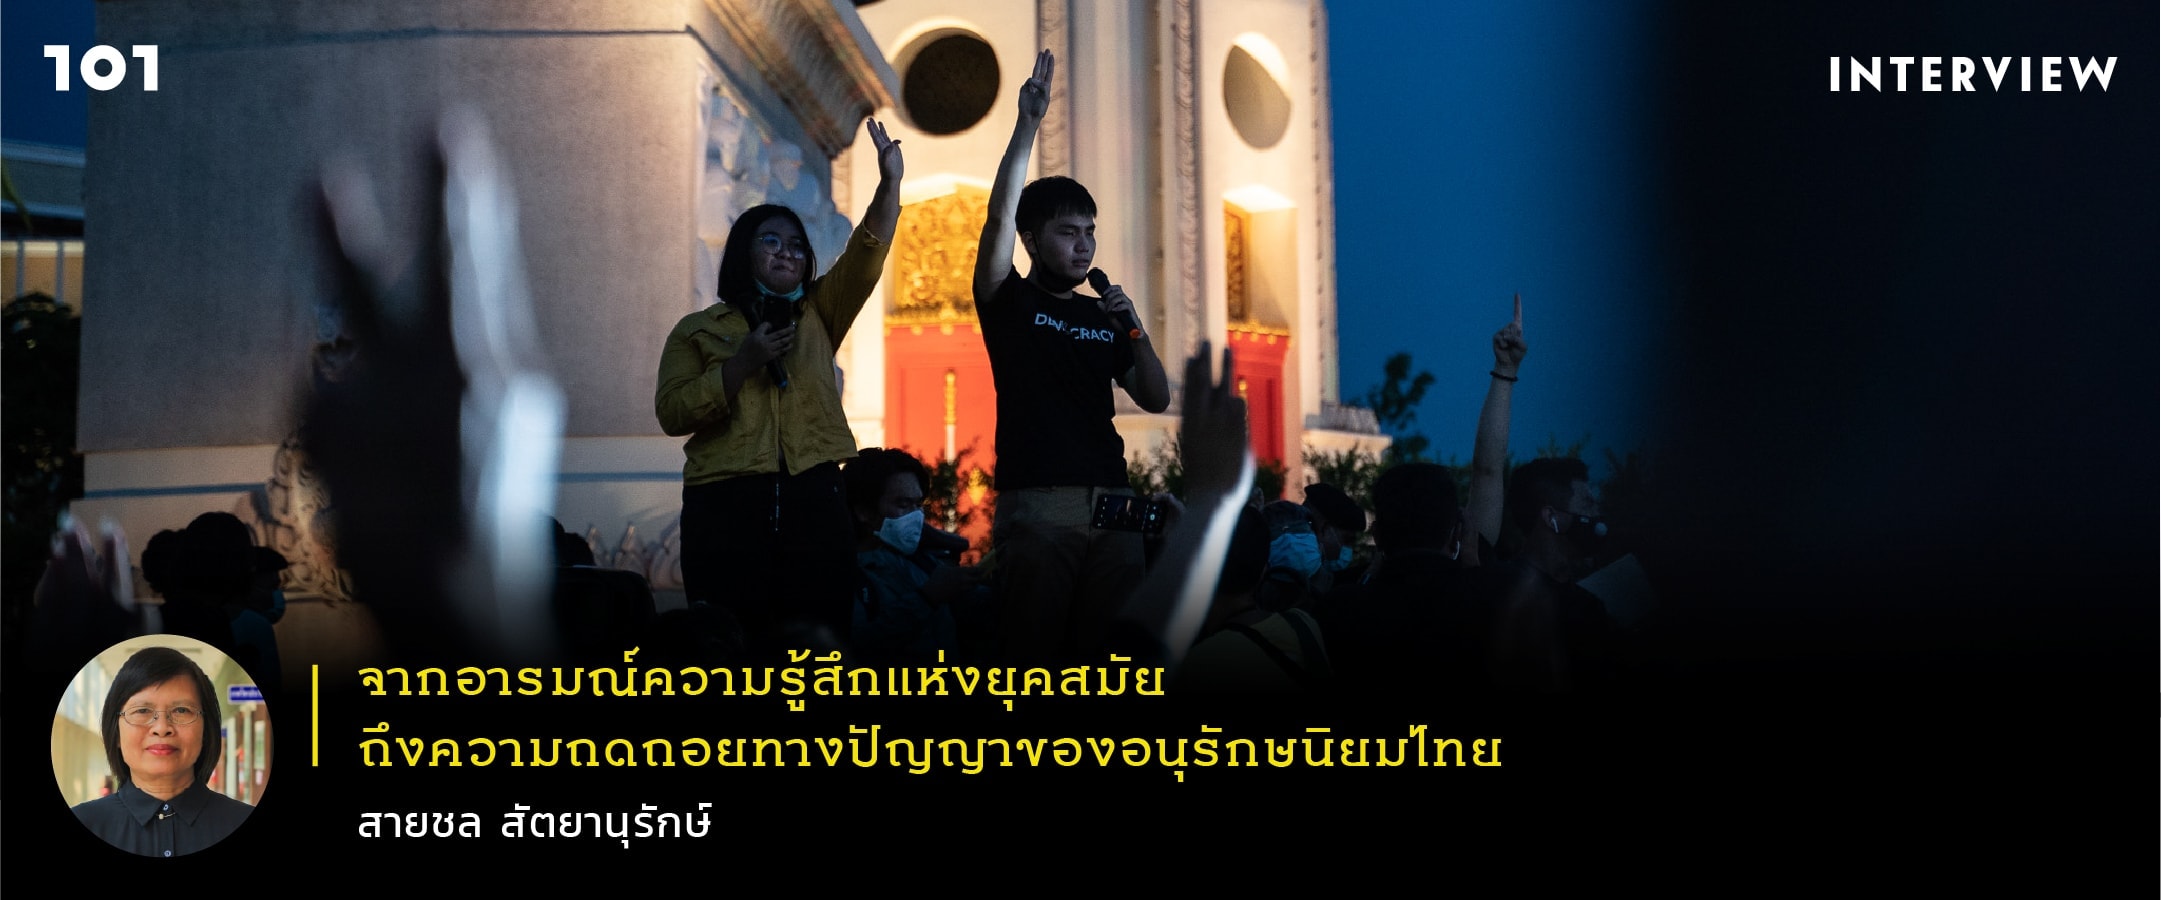 จากอารมณ์ความรู้สึกแห่งยุคสมัยถึงการถดถอยทางปัญญาของอนุรักษนิยมไทย สนทนากับสายชล สัตยานุรักษ์